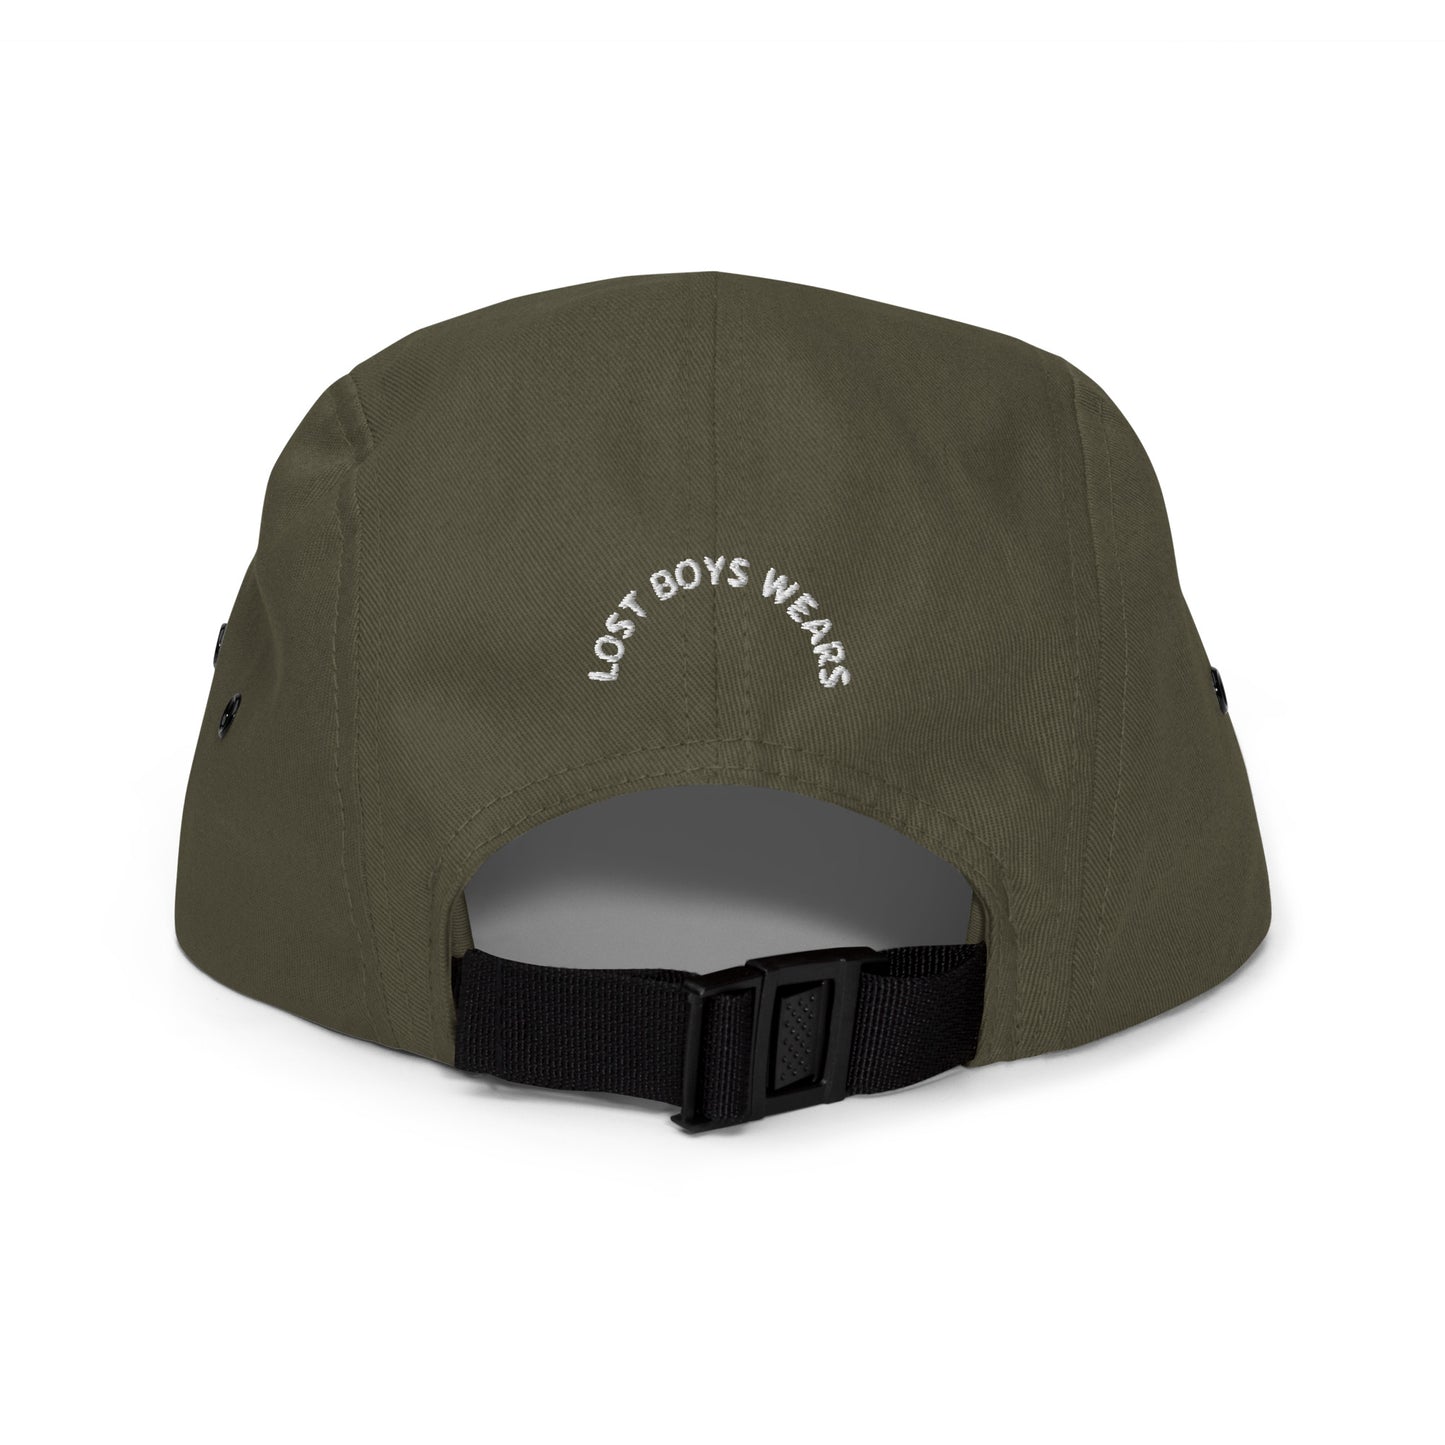 Camper luv (5 panel hat)